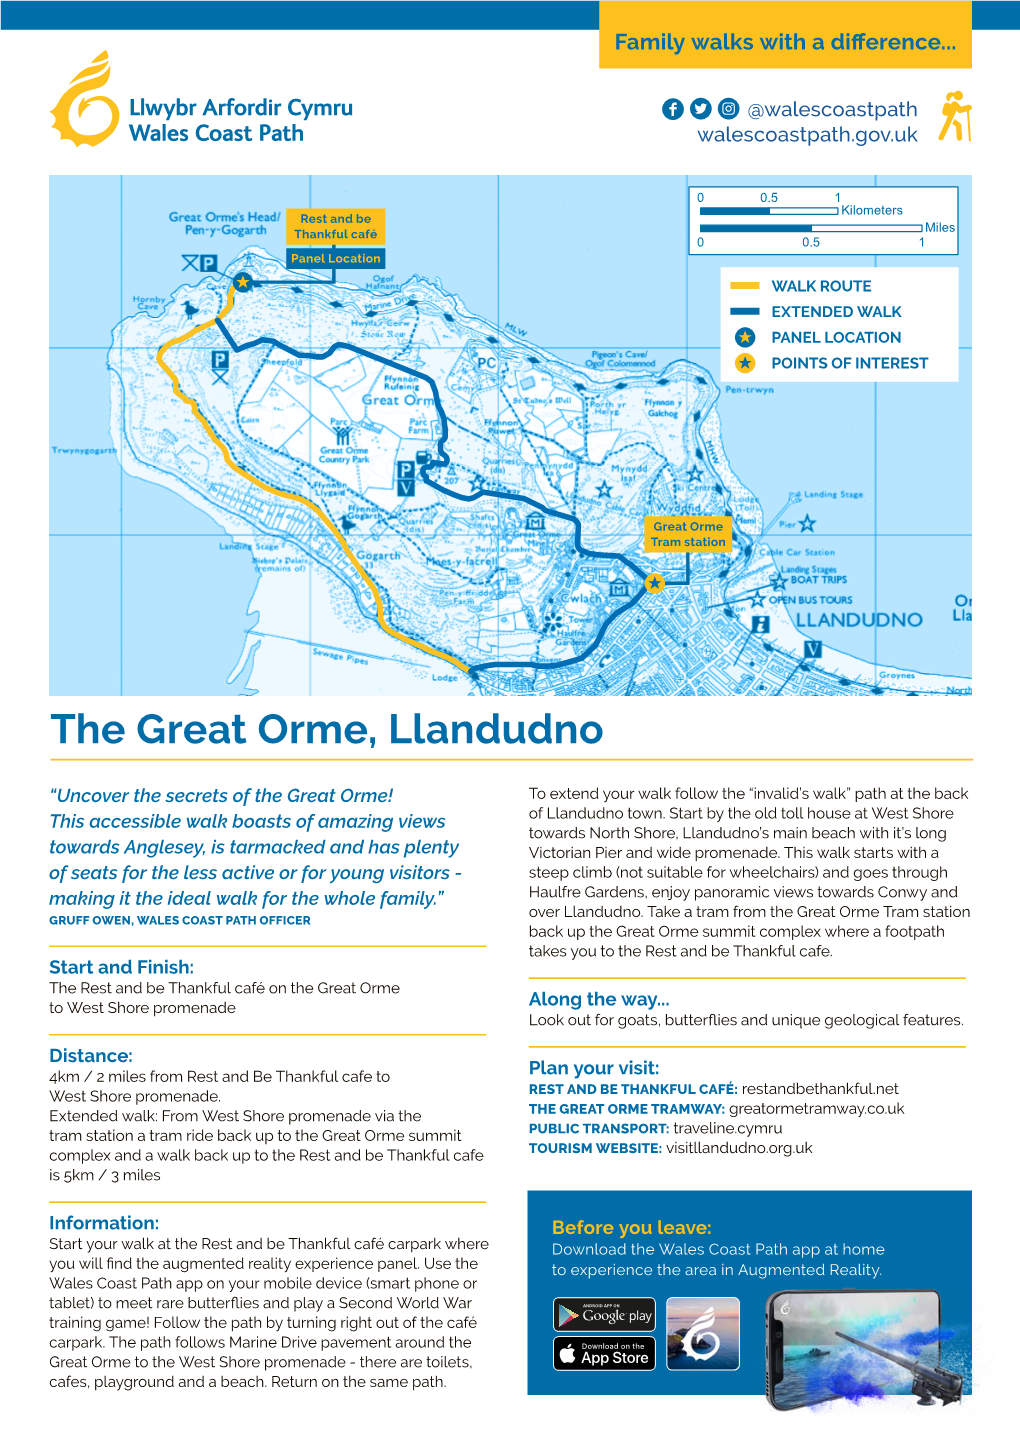 The Great Orme, Llandudno